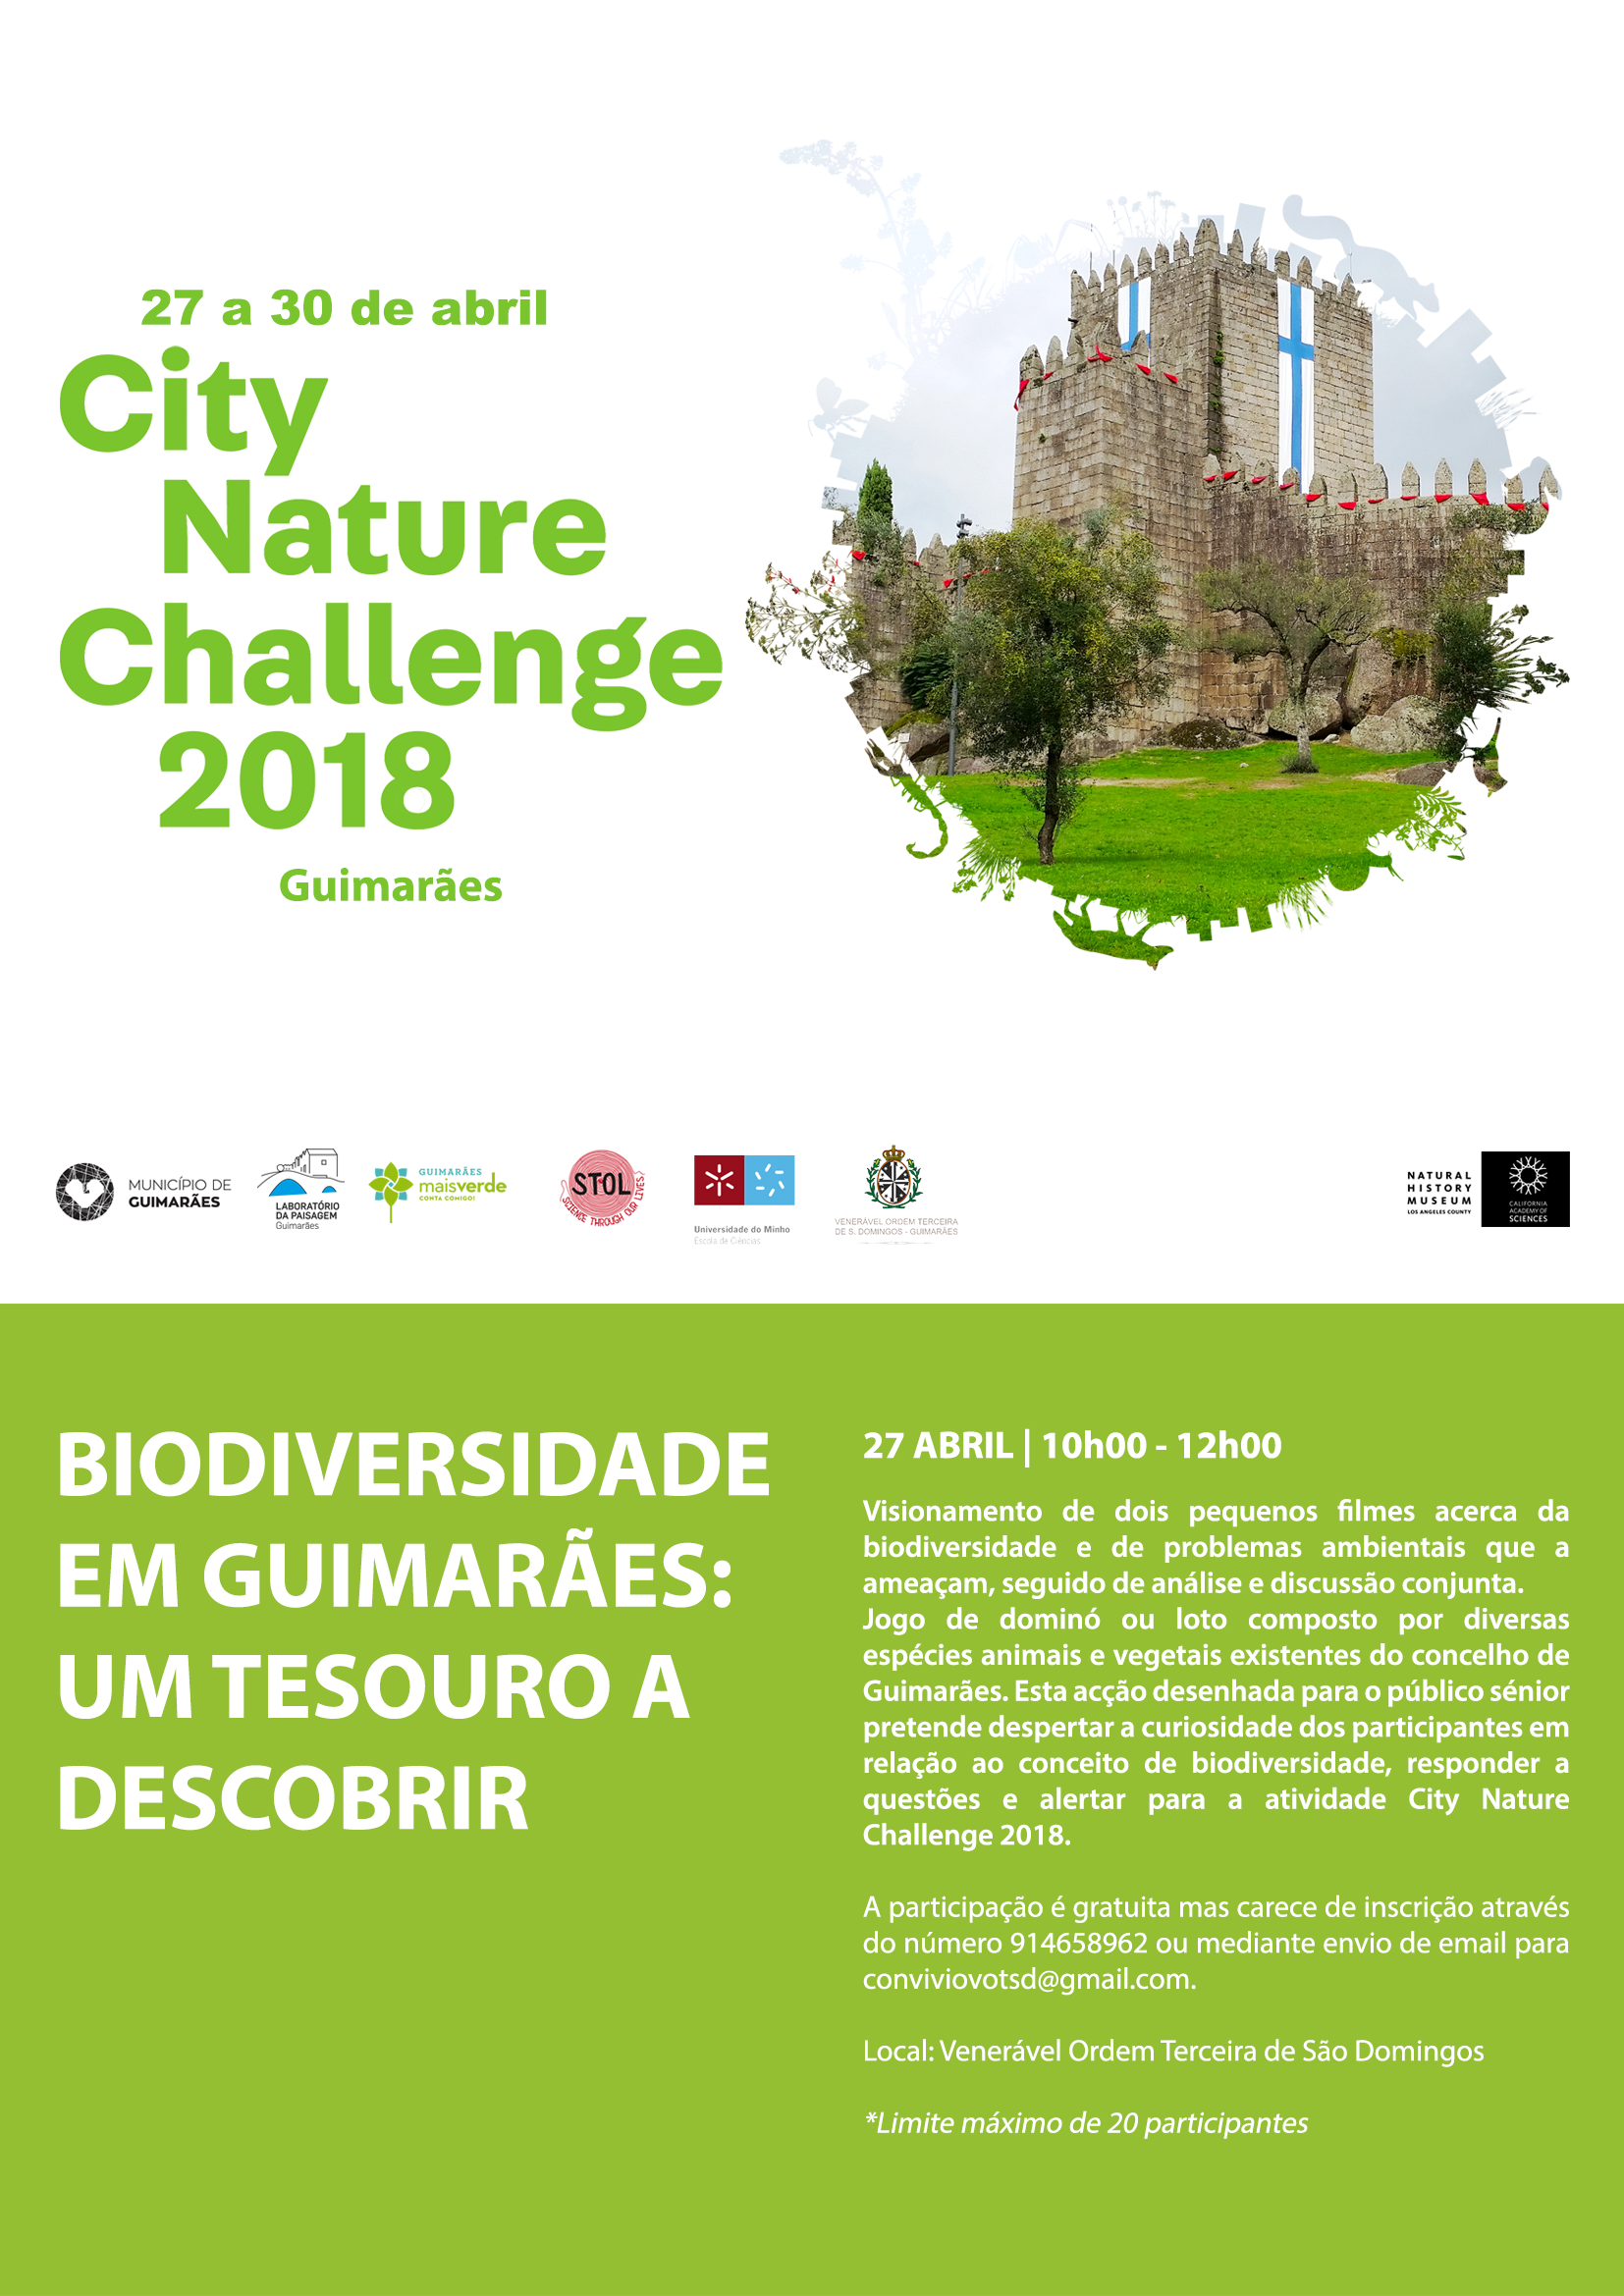 Biodiversidade em Guimarães